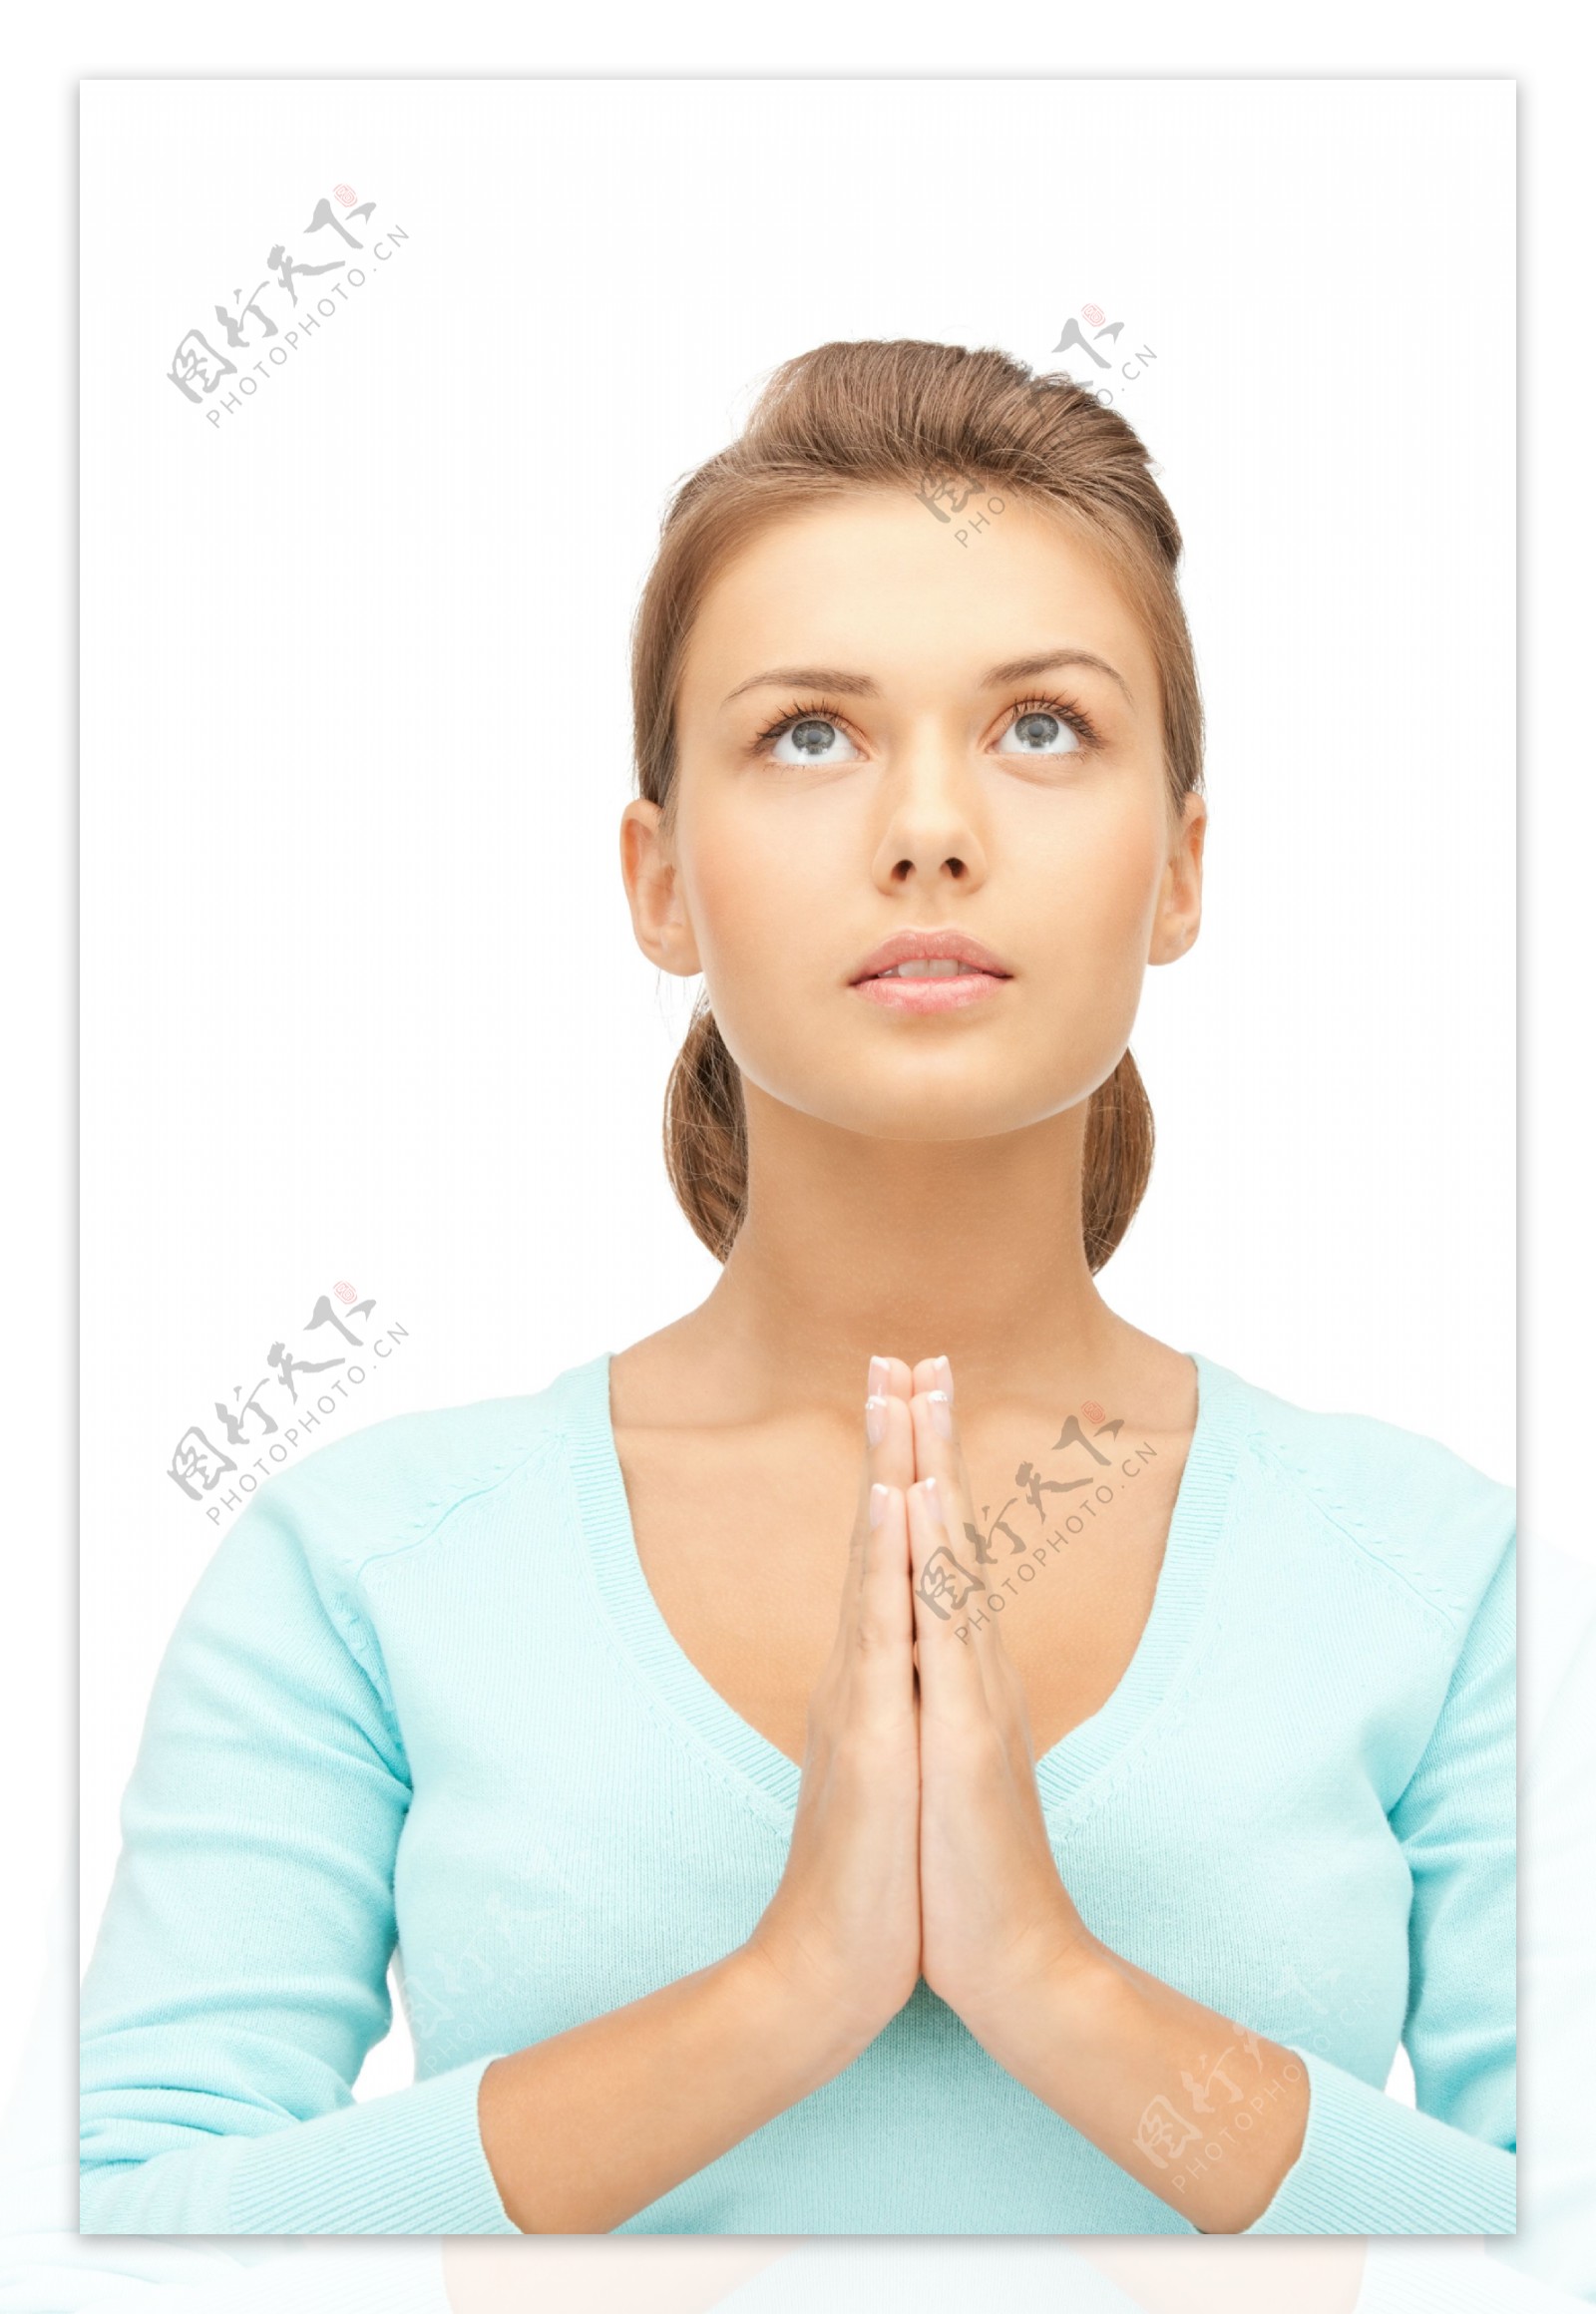 双手合十祈祷的美女图片